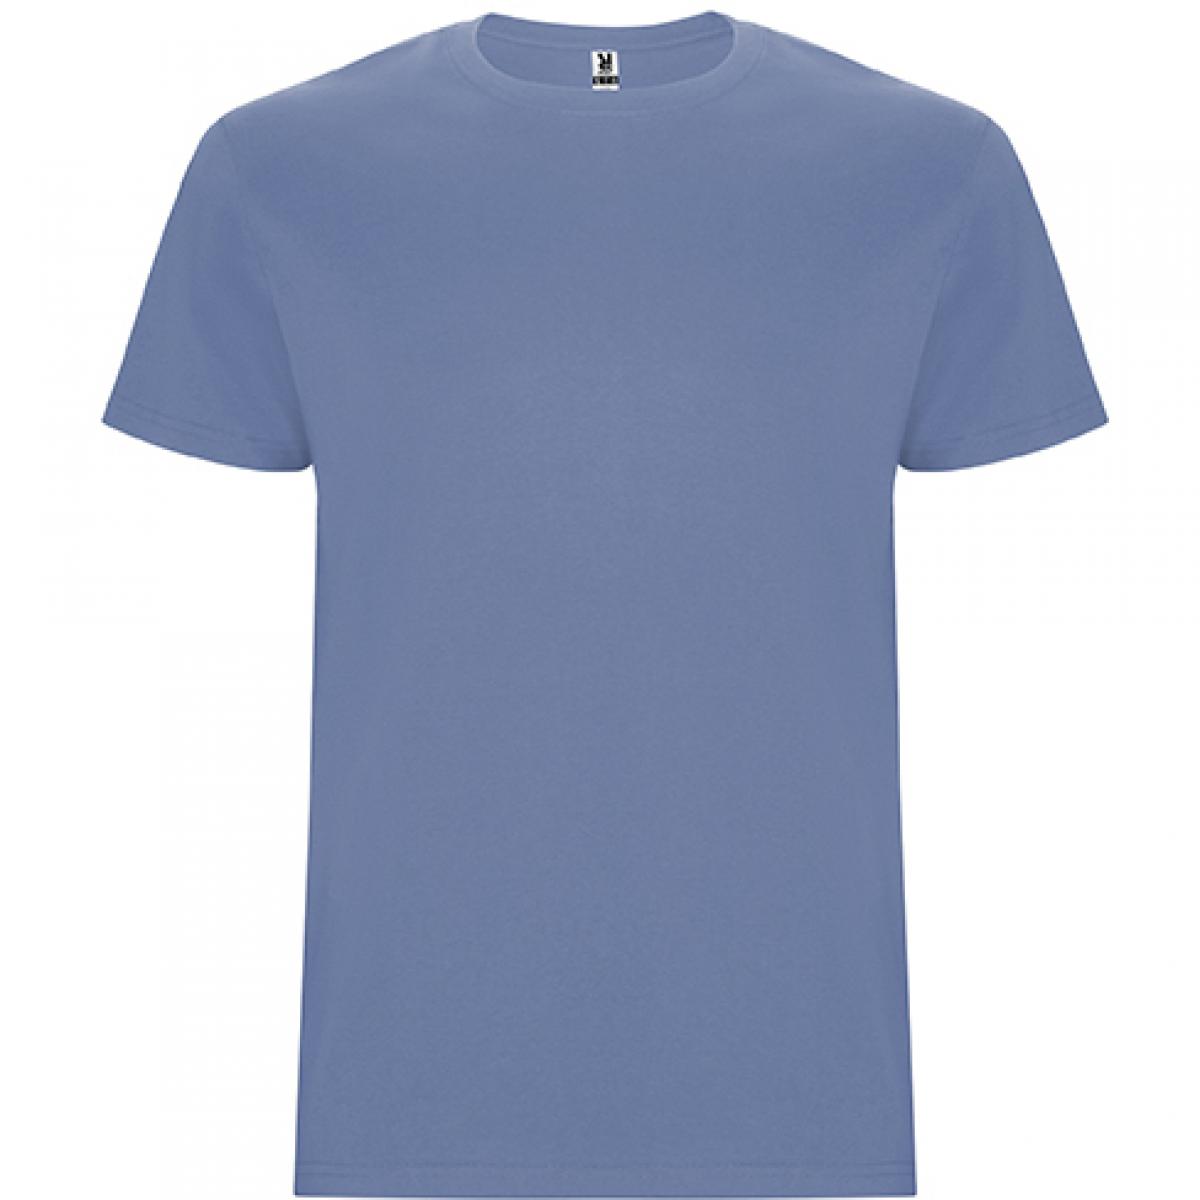 Hersteller: Roly Herstellernummer: CA6681 Artikelbezeichnung: Stafford T-Shirt - Doppellagiger Rundhalskragen Farbe: Denim Blue 86